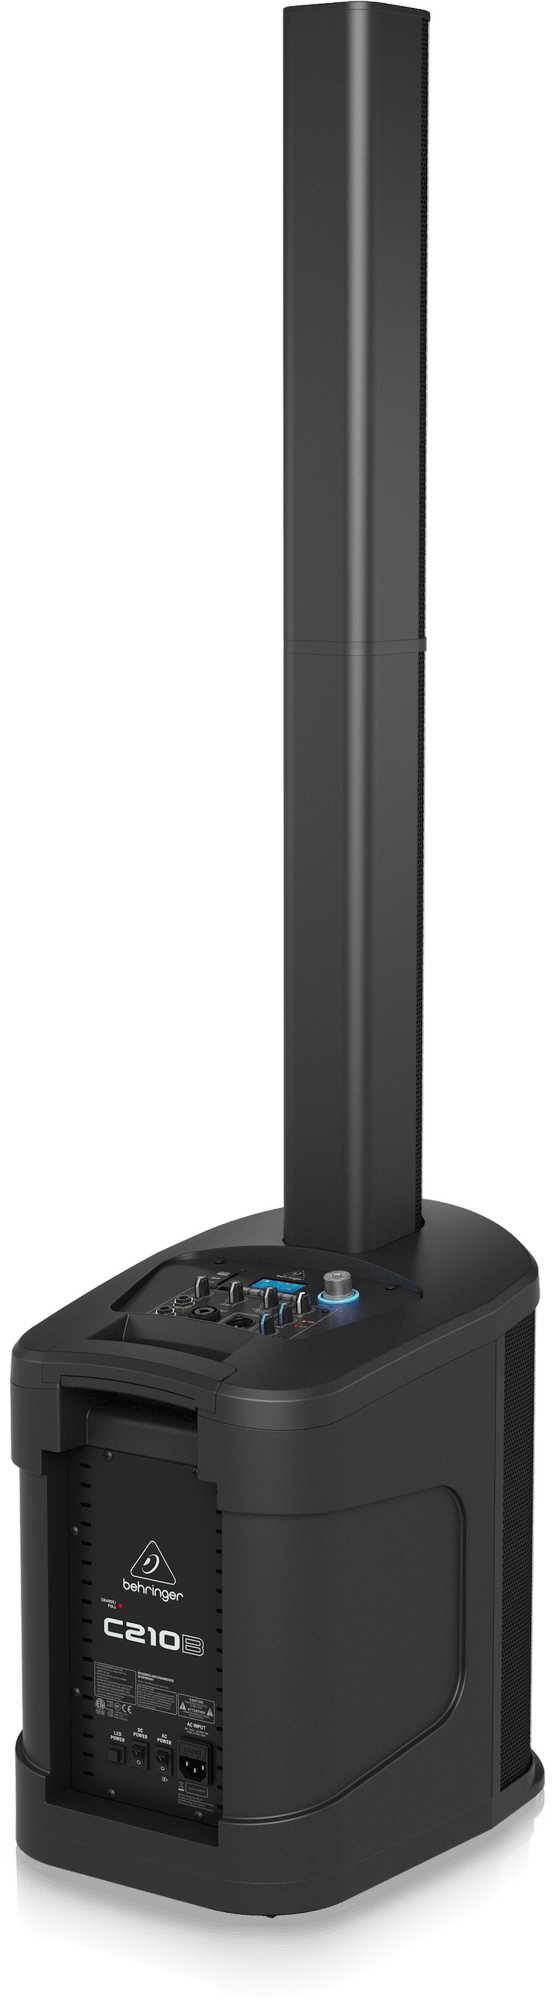 Behringer C210B 160W Active Column Speaker with Battery | BEHRINGER , Zoso Music